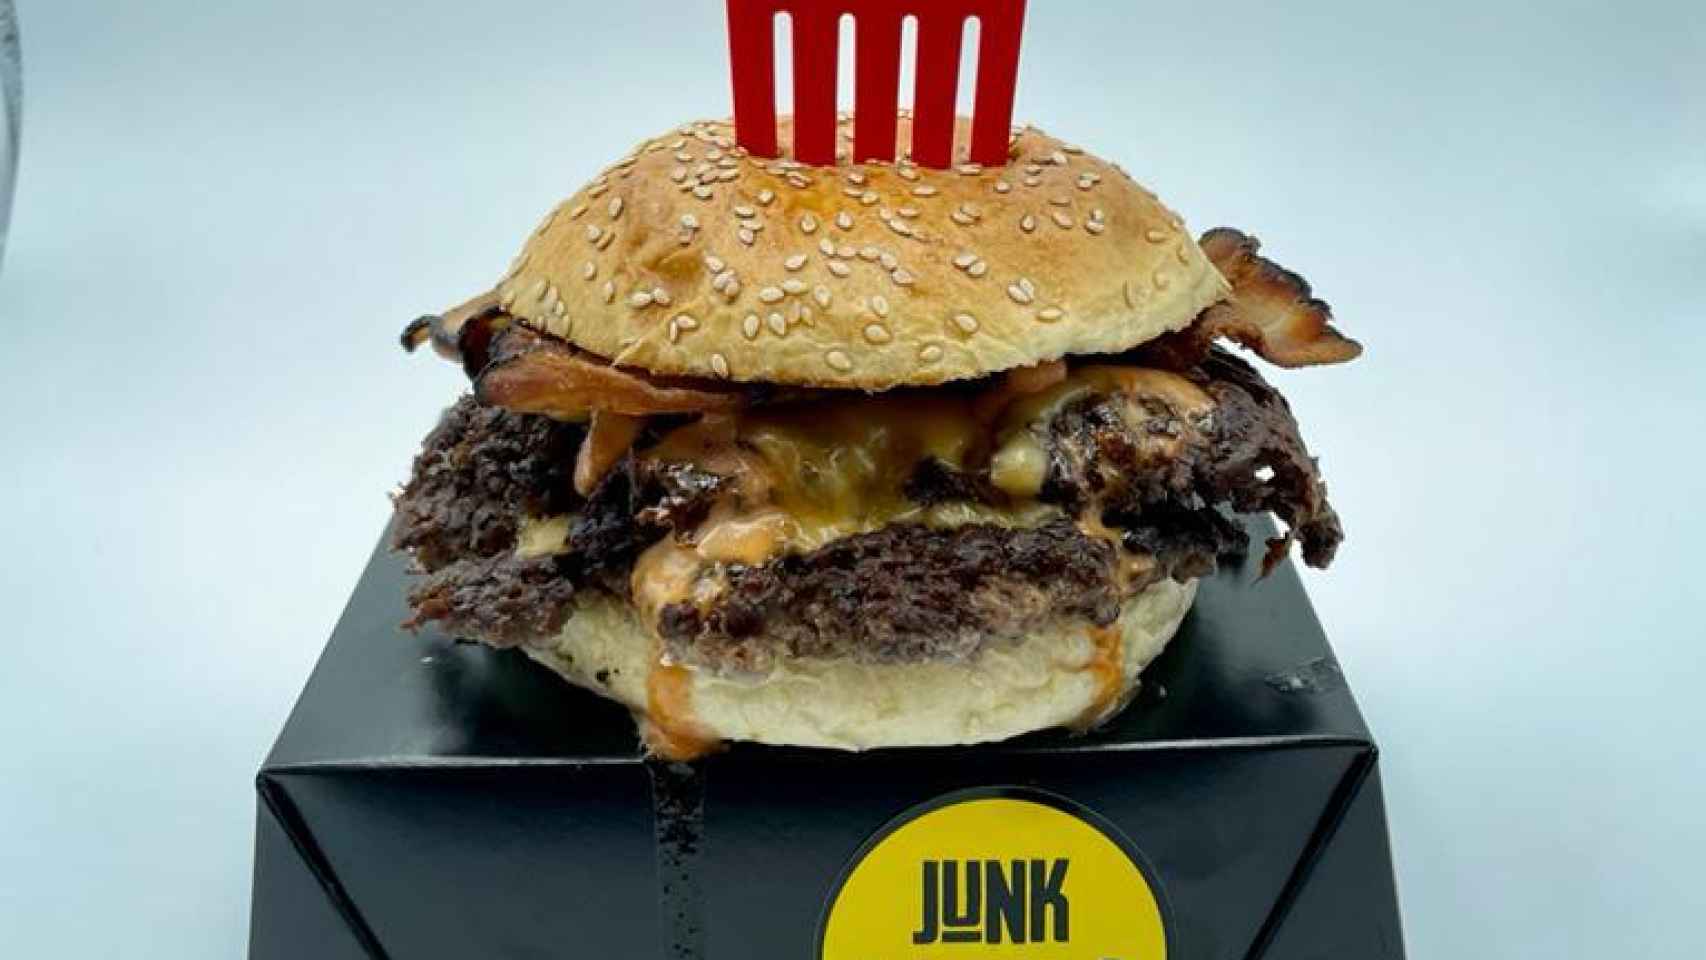 Junk by @doblecheeseburger